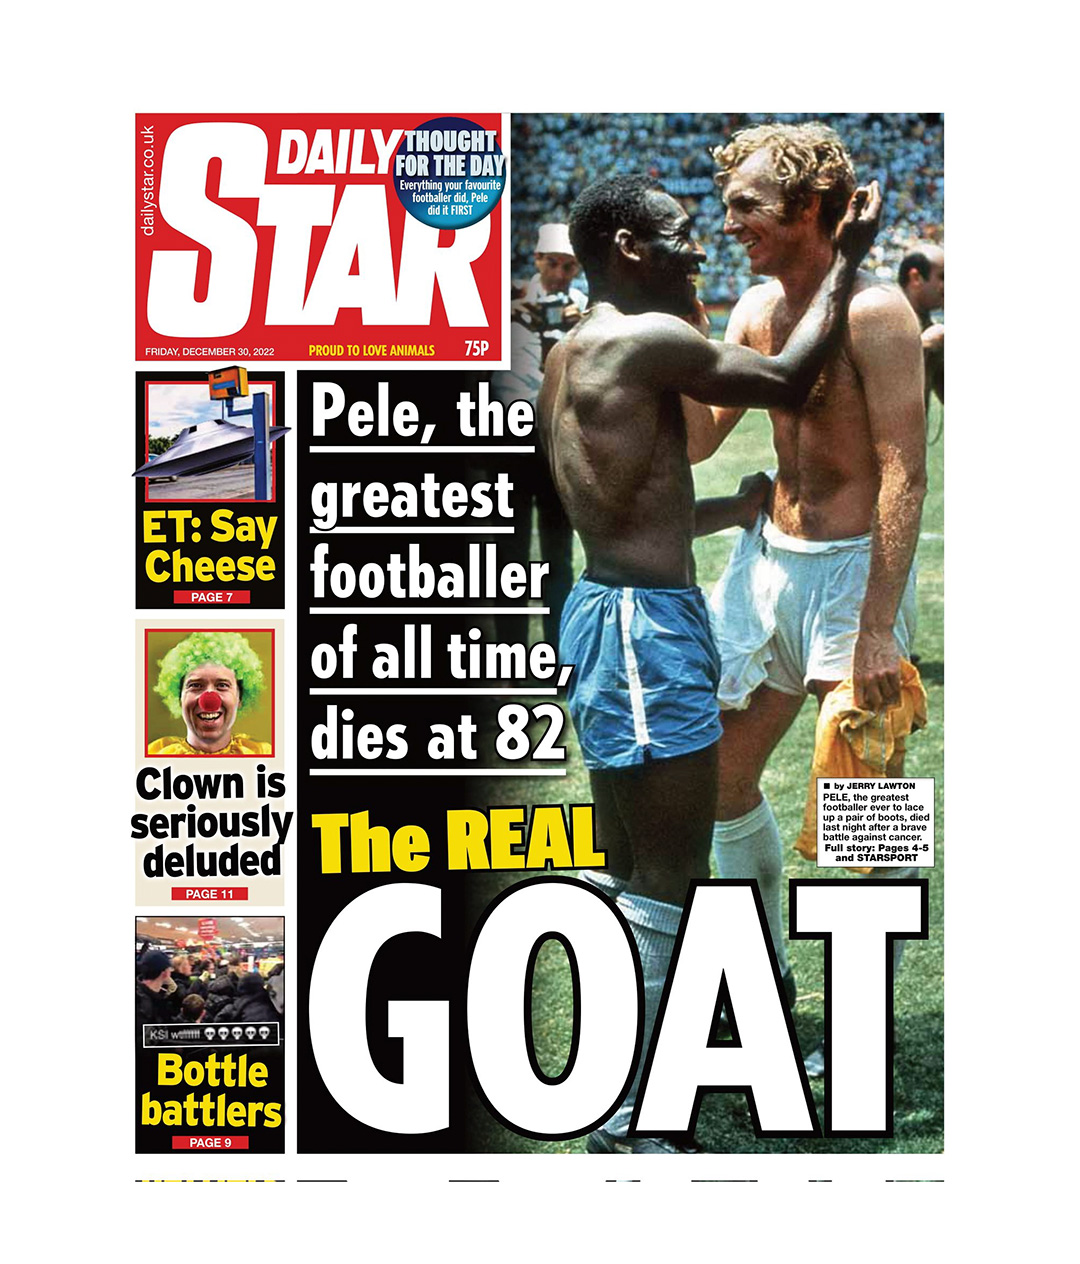 La disputa editorial llegó a la muerte de Pelé: así tituló Daily Star